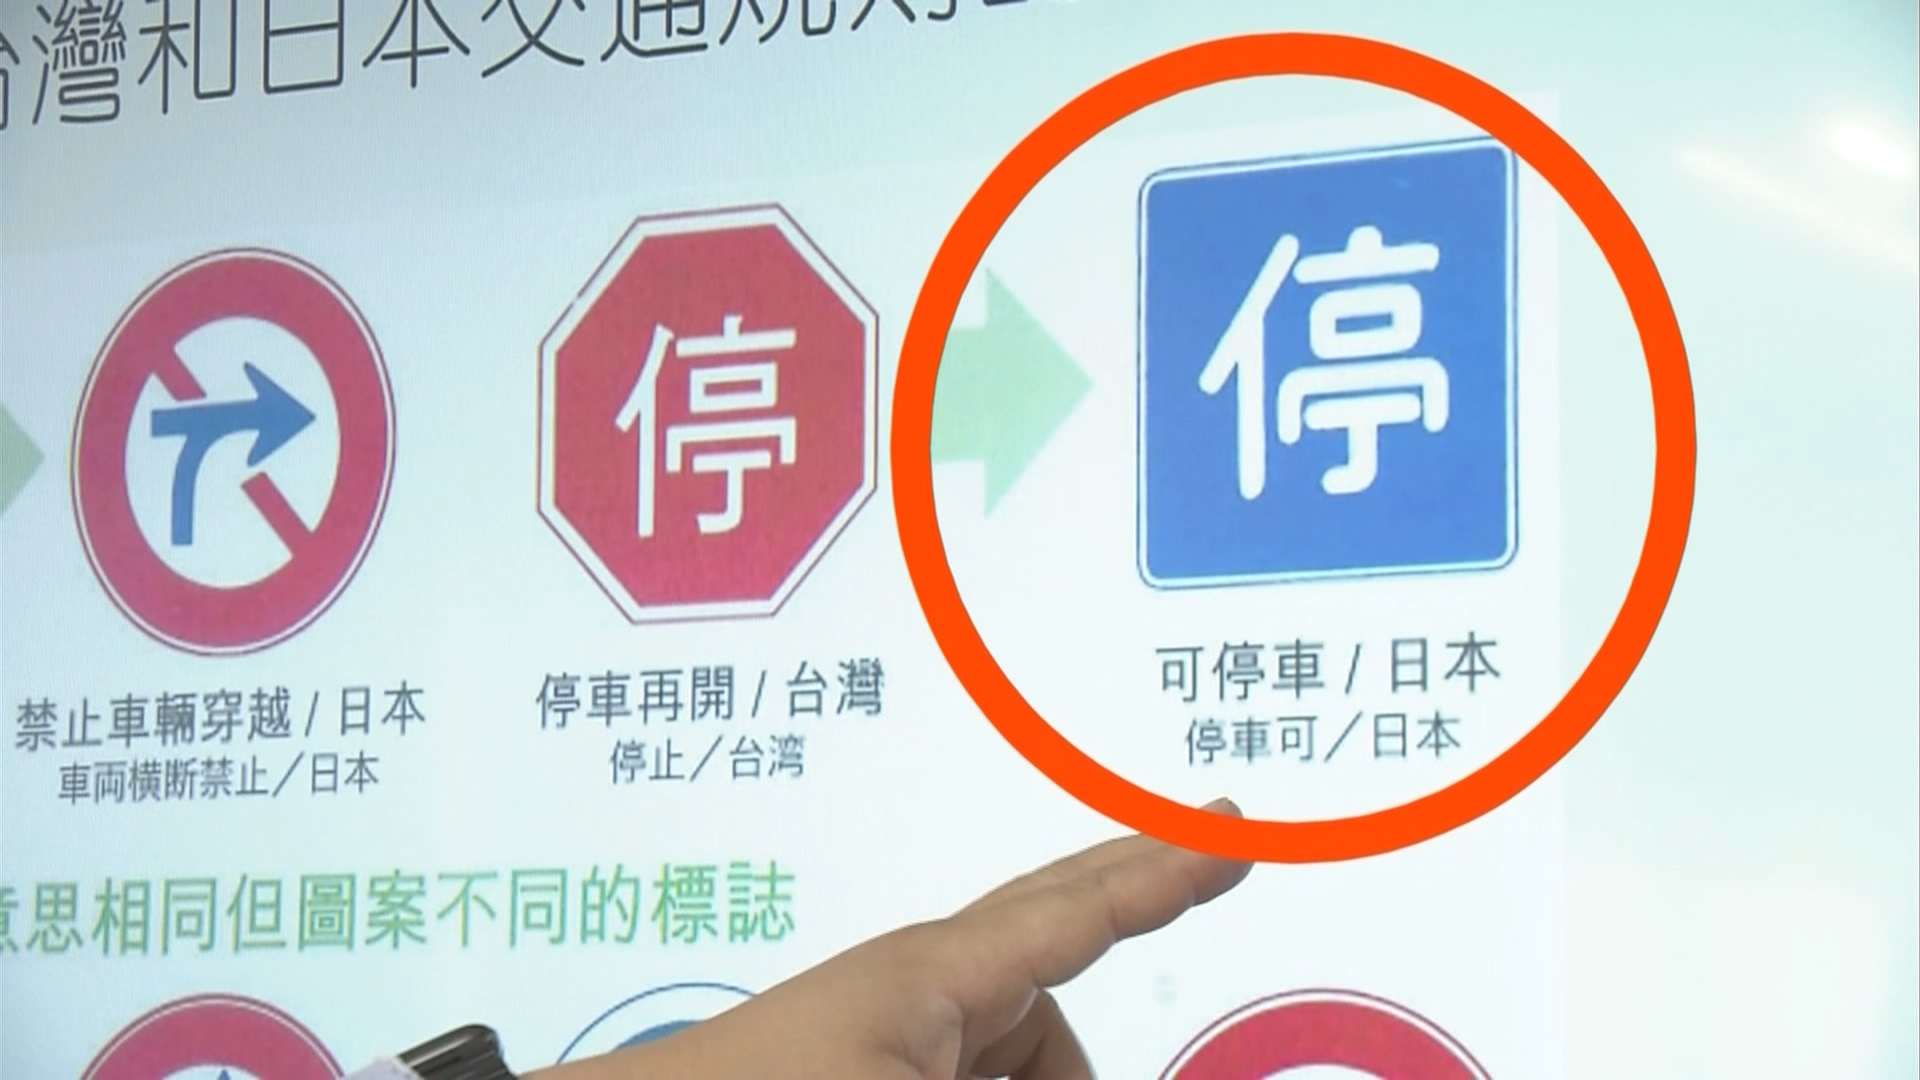 일본과 타이완의 교통표지판 비교 자료를 준비한 운전학원